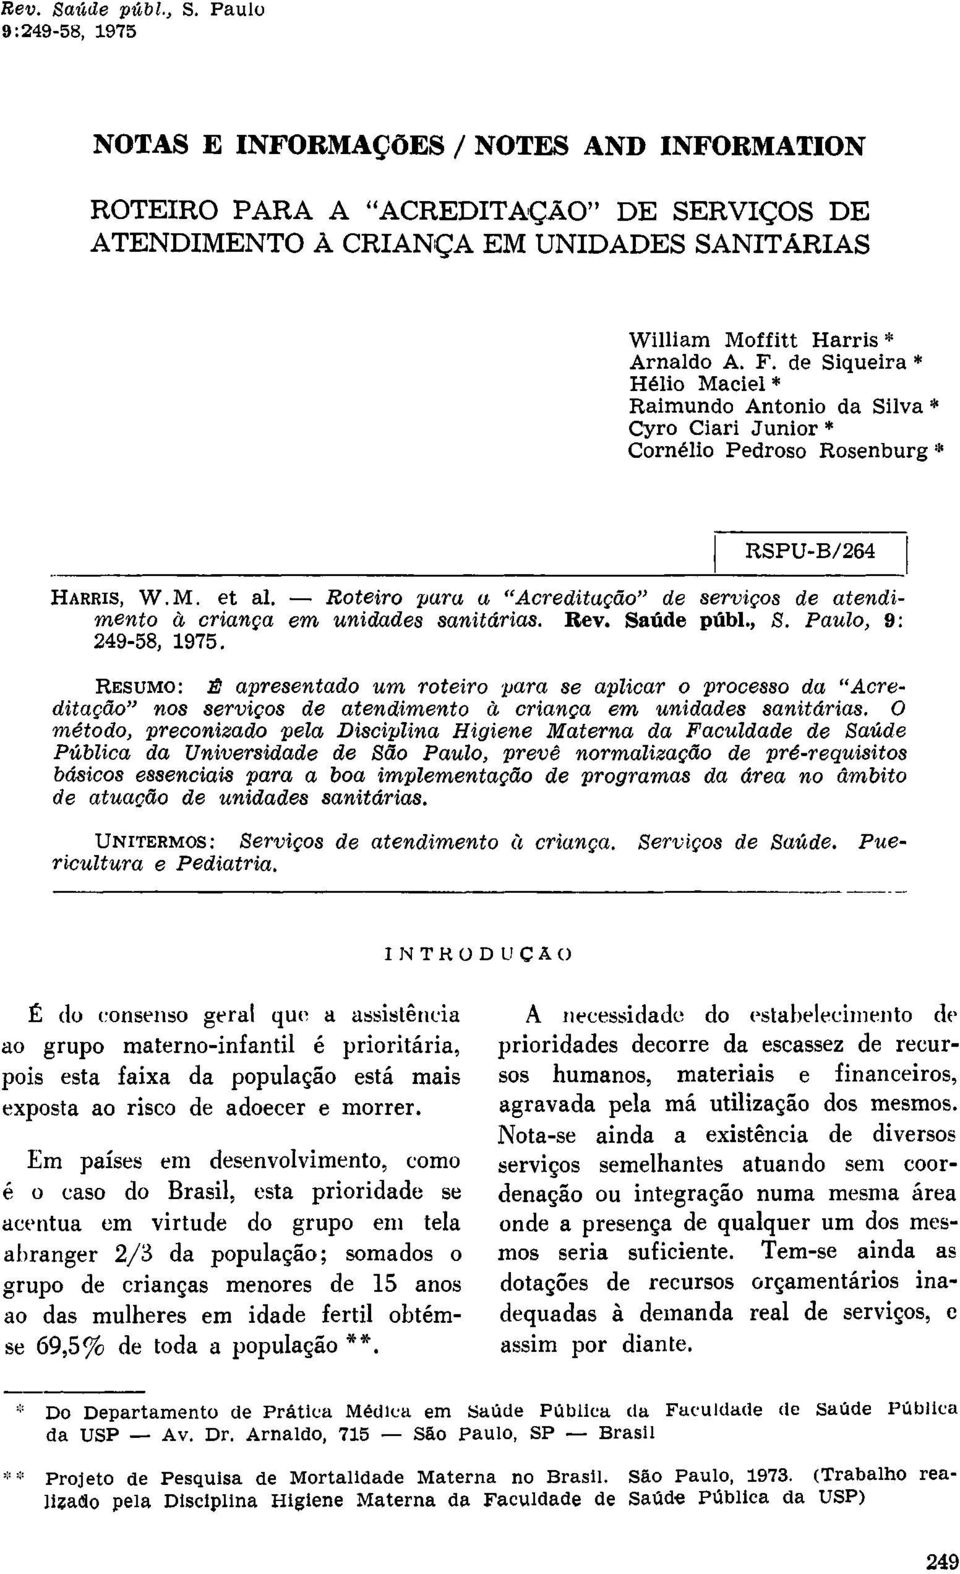 Roteiro para a "Acreditação" de serviços de atendimento à criança em unidades sanitárias. Rev. Saúde públ., S. Paulo, 9: 249-58, 1975.